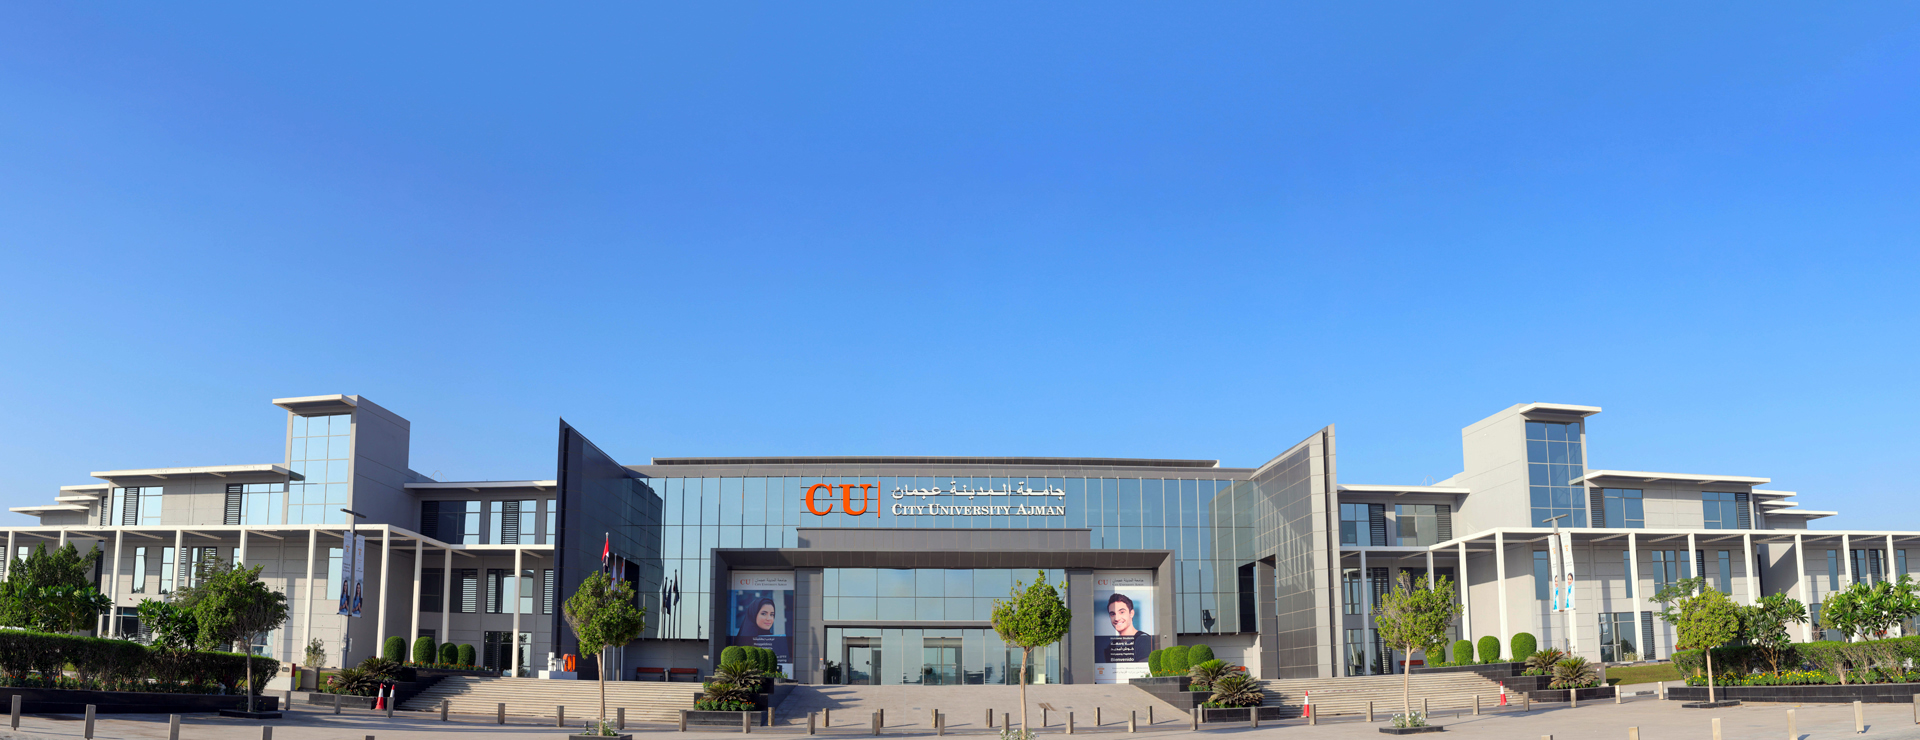 استضافت جامعة المدينة عجمان مؤتمرها الدولي الافتراضي الأول لإدارة الموارد